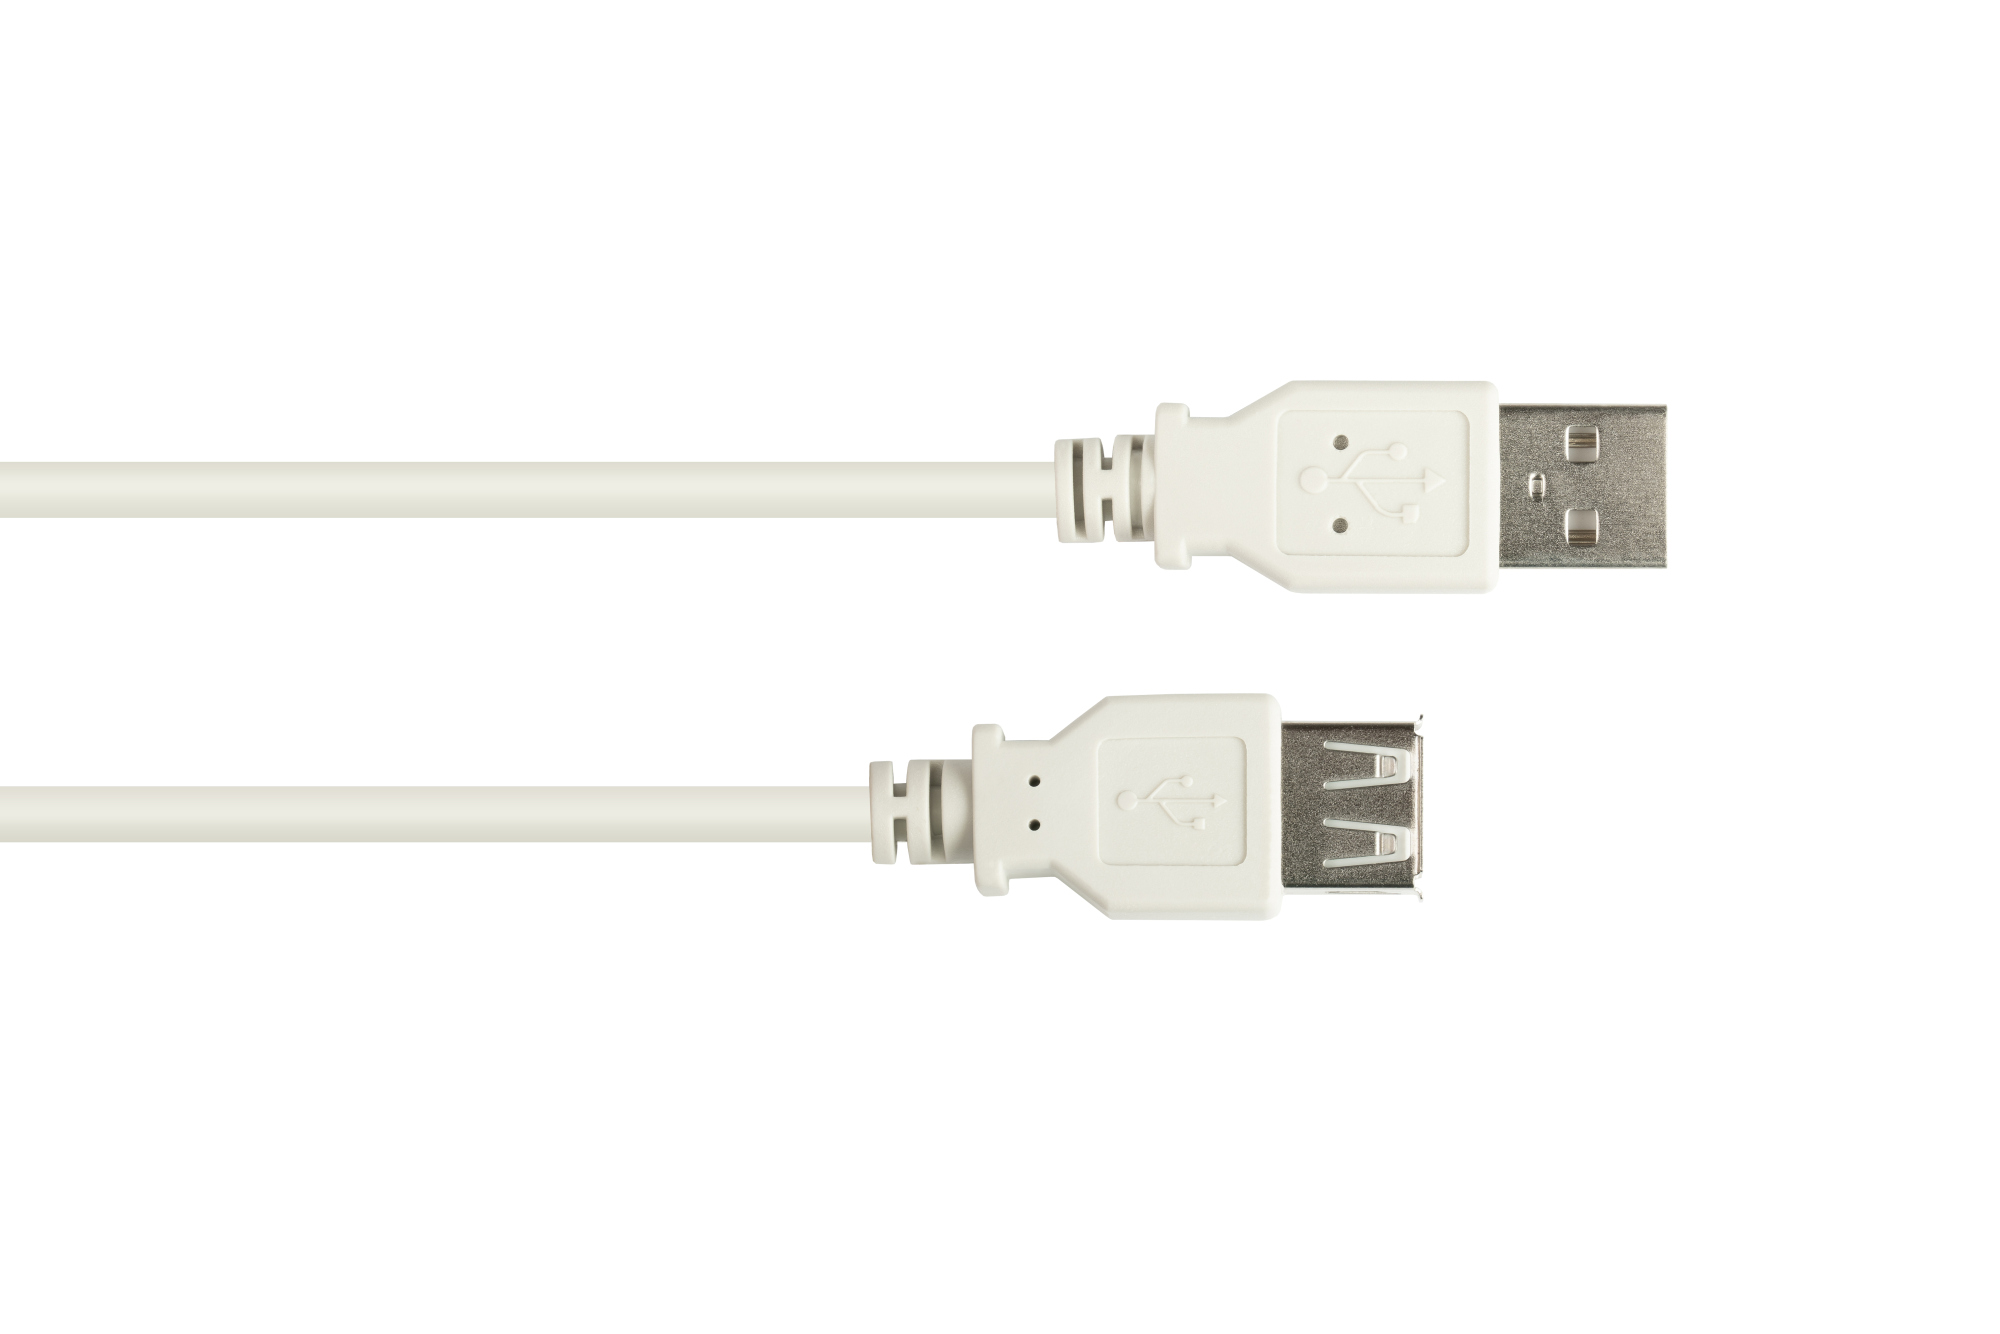 Verlängerungskabel USB 2.0 Stecker A an Buchse A, grau, 1m, Good Connections®